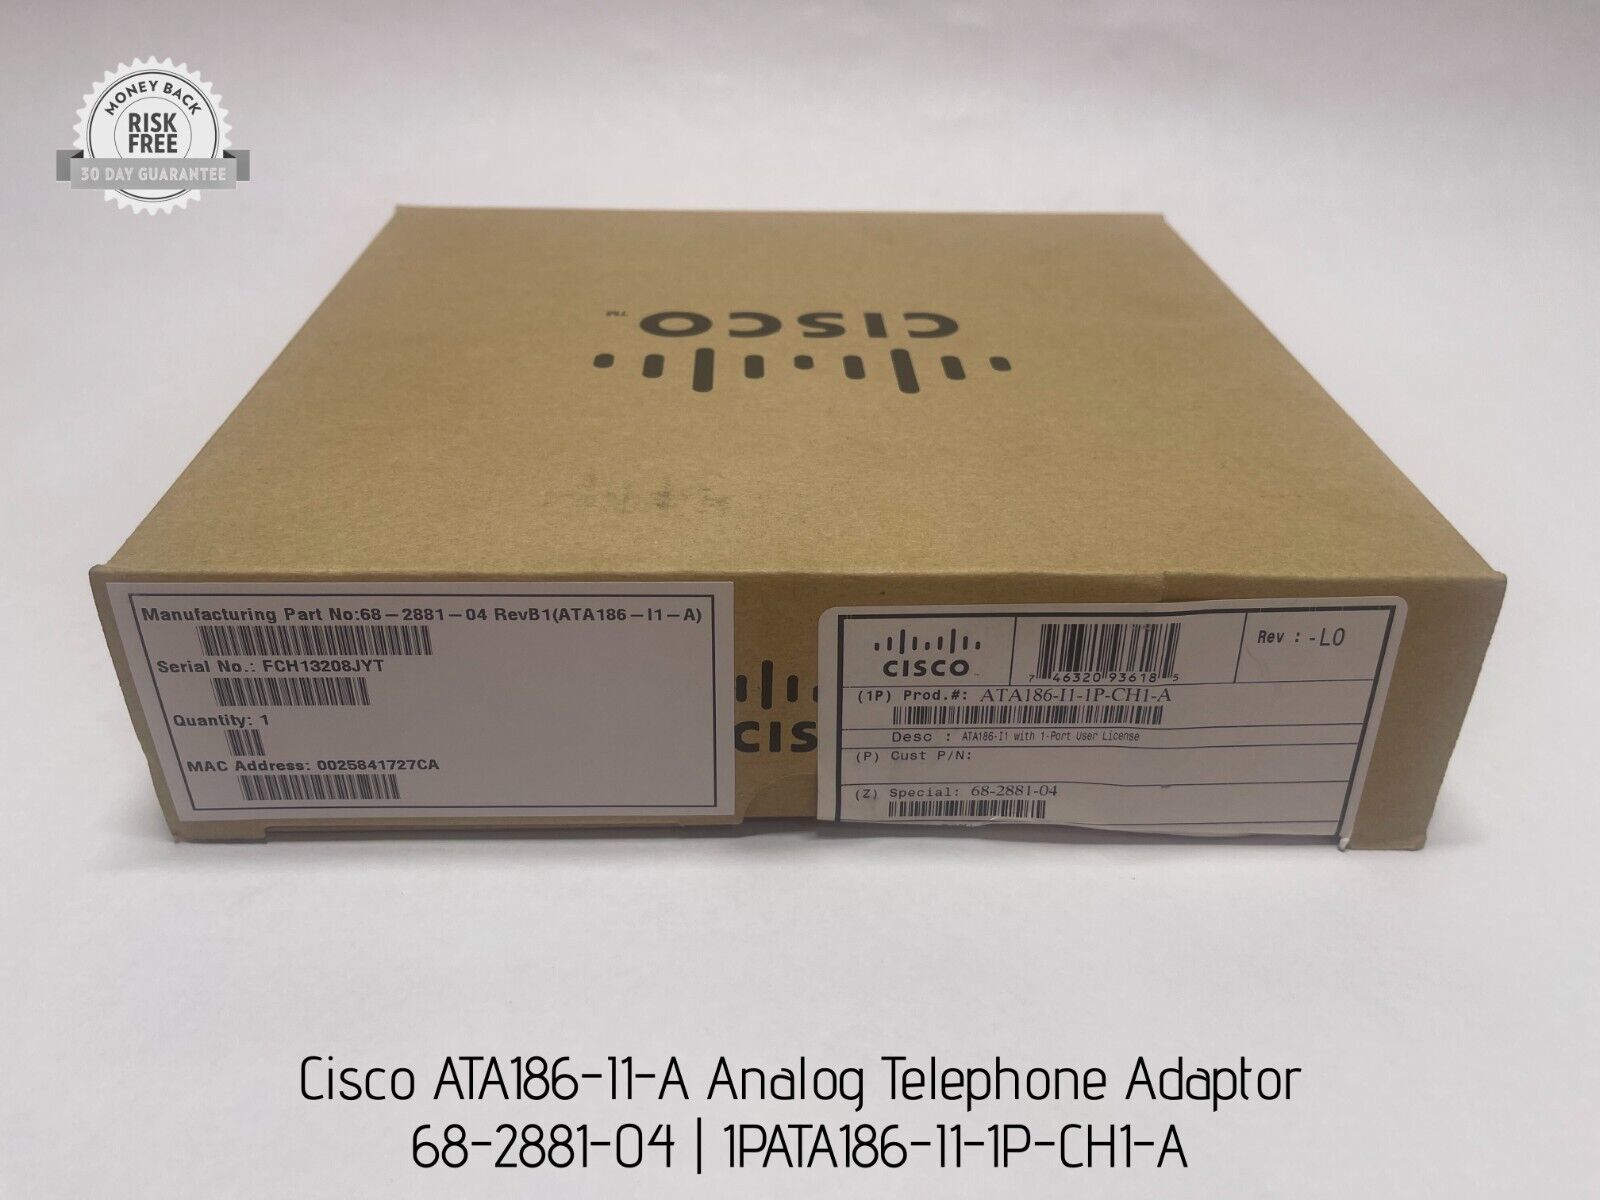 Cisco ATA186-I1-A Analog Telephone Adaptor, 68-2881-04, 1PATA186-I1-1P-CH1-A